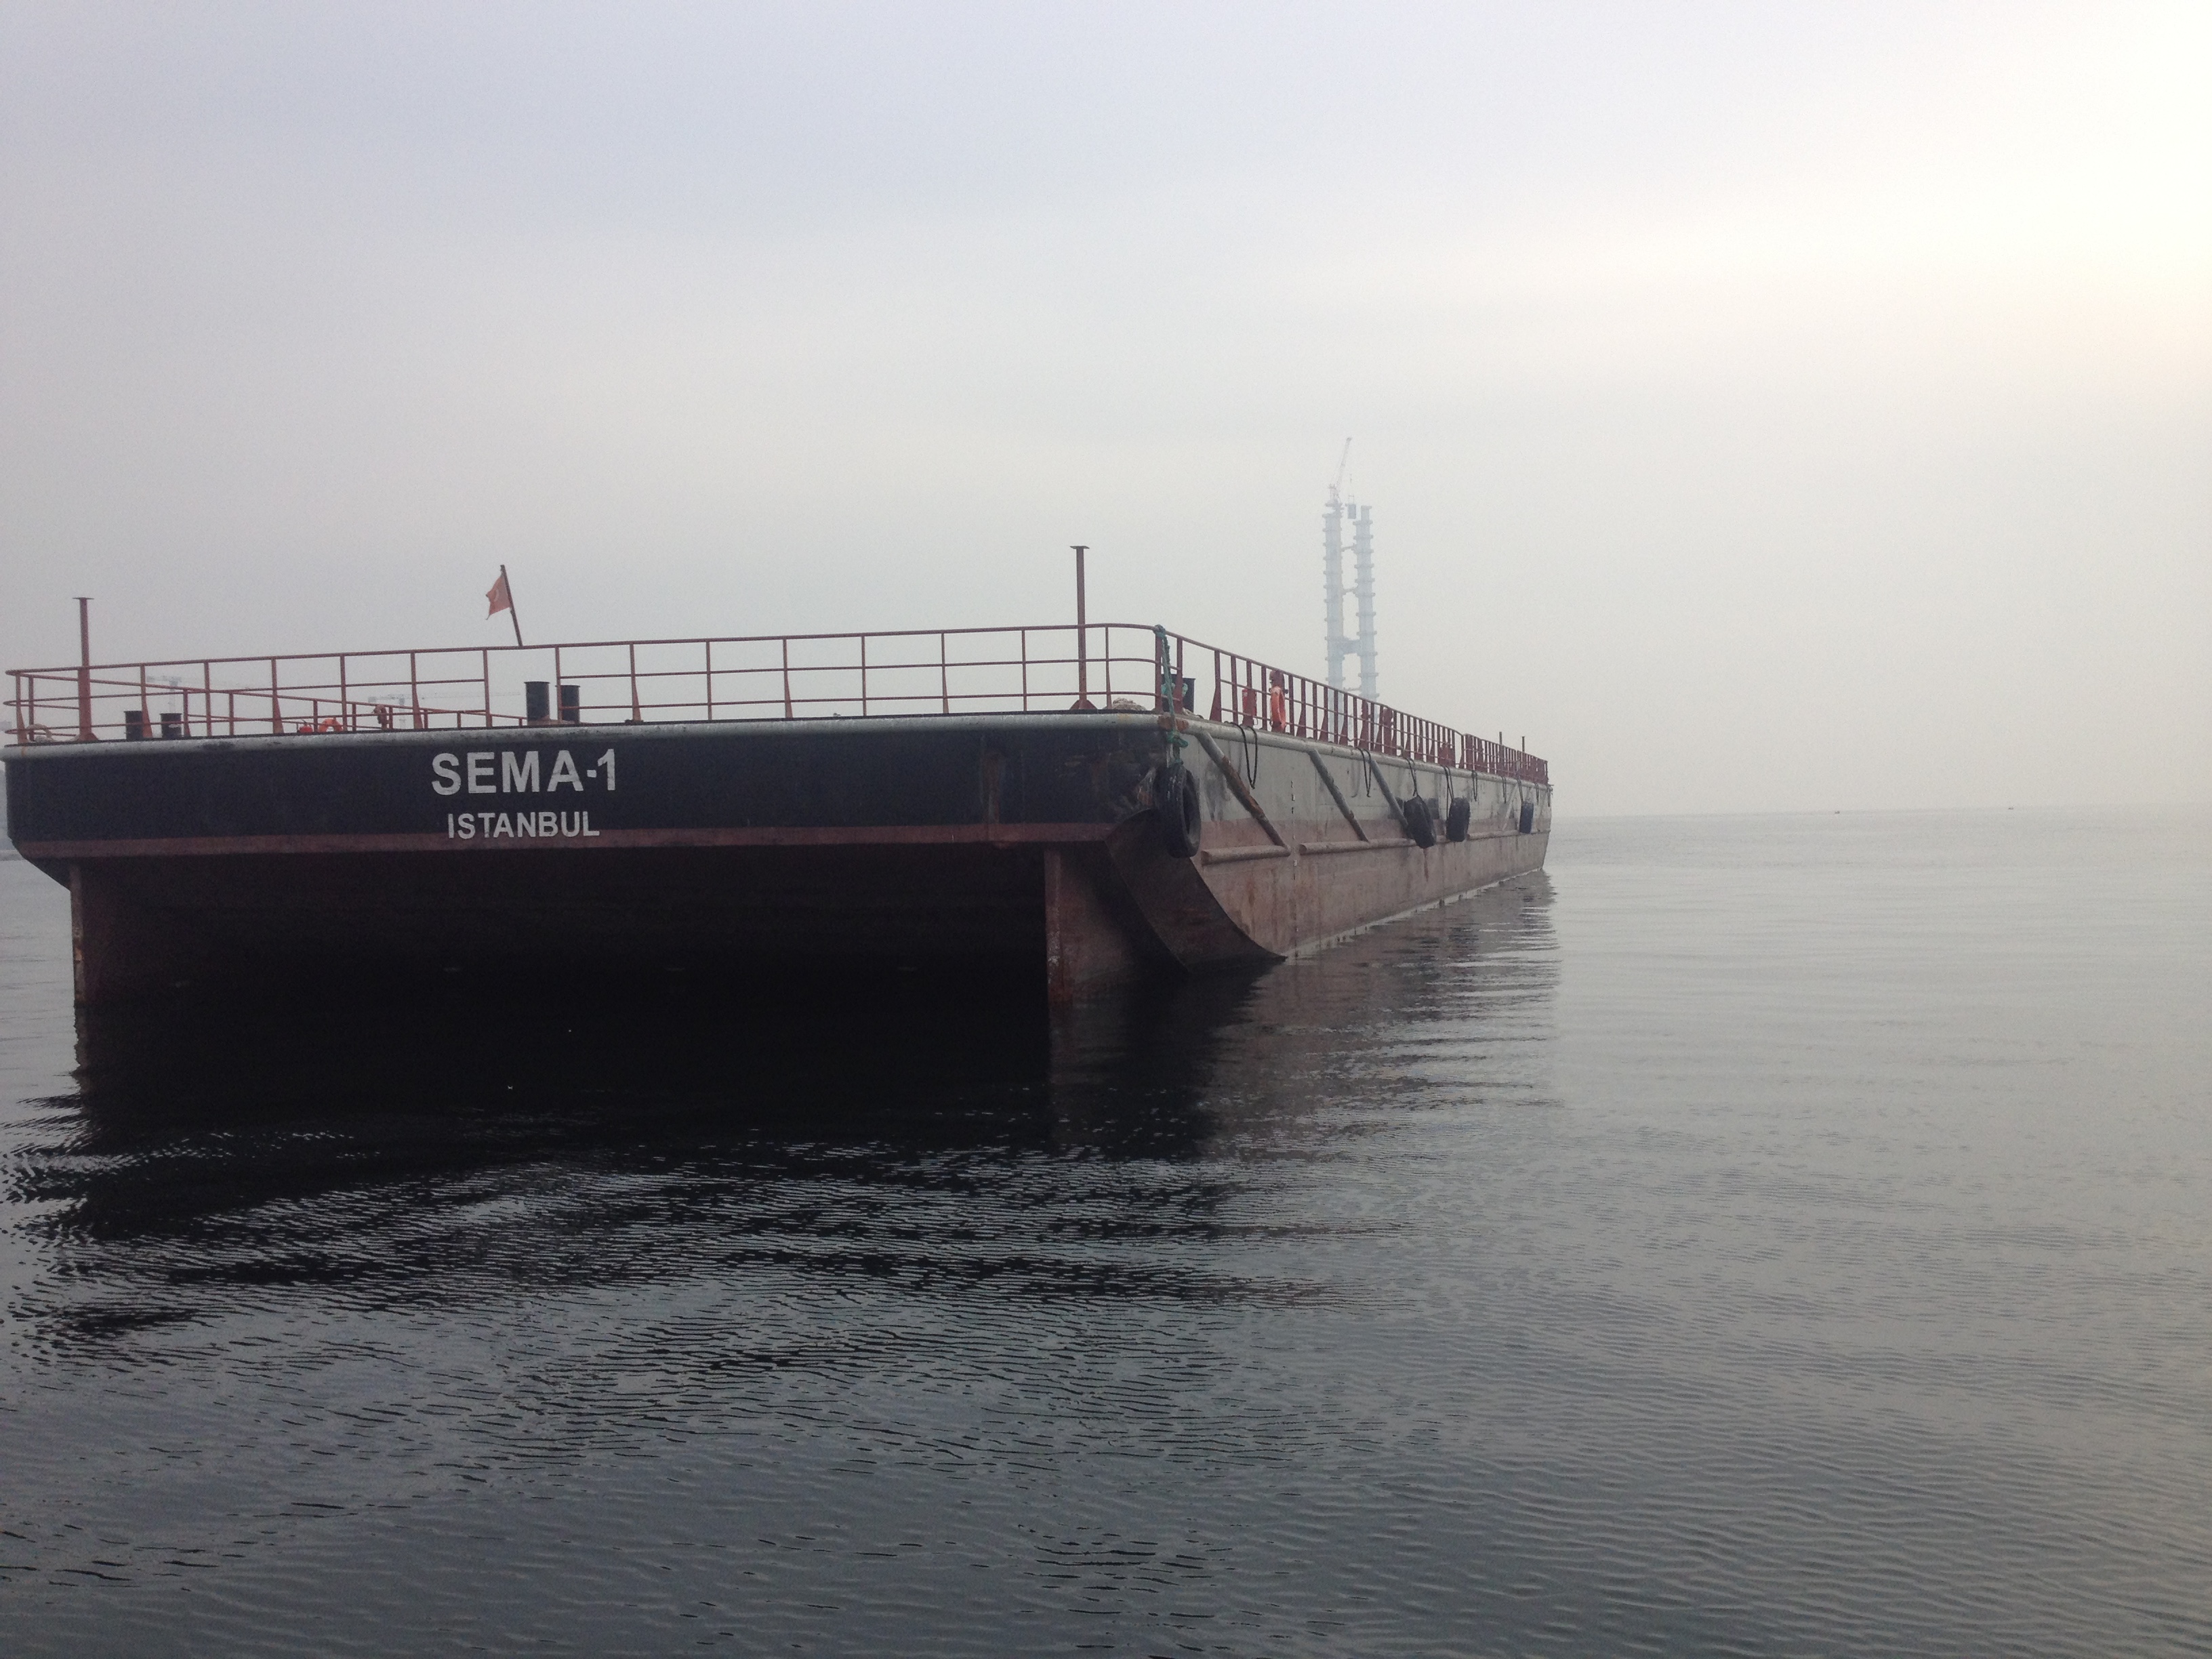 Flattop Barge Sema-1